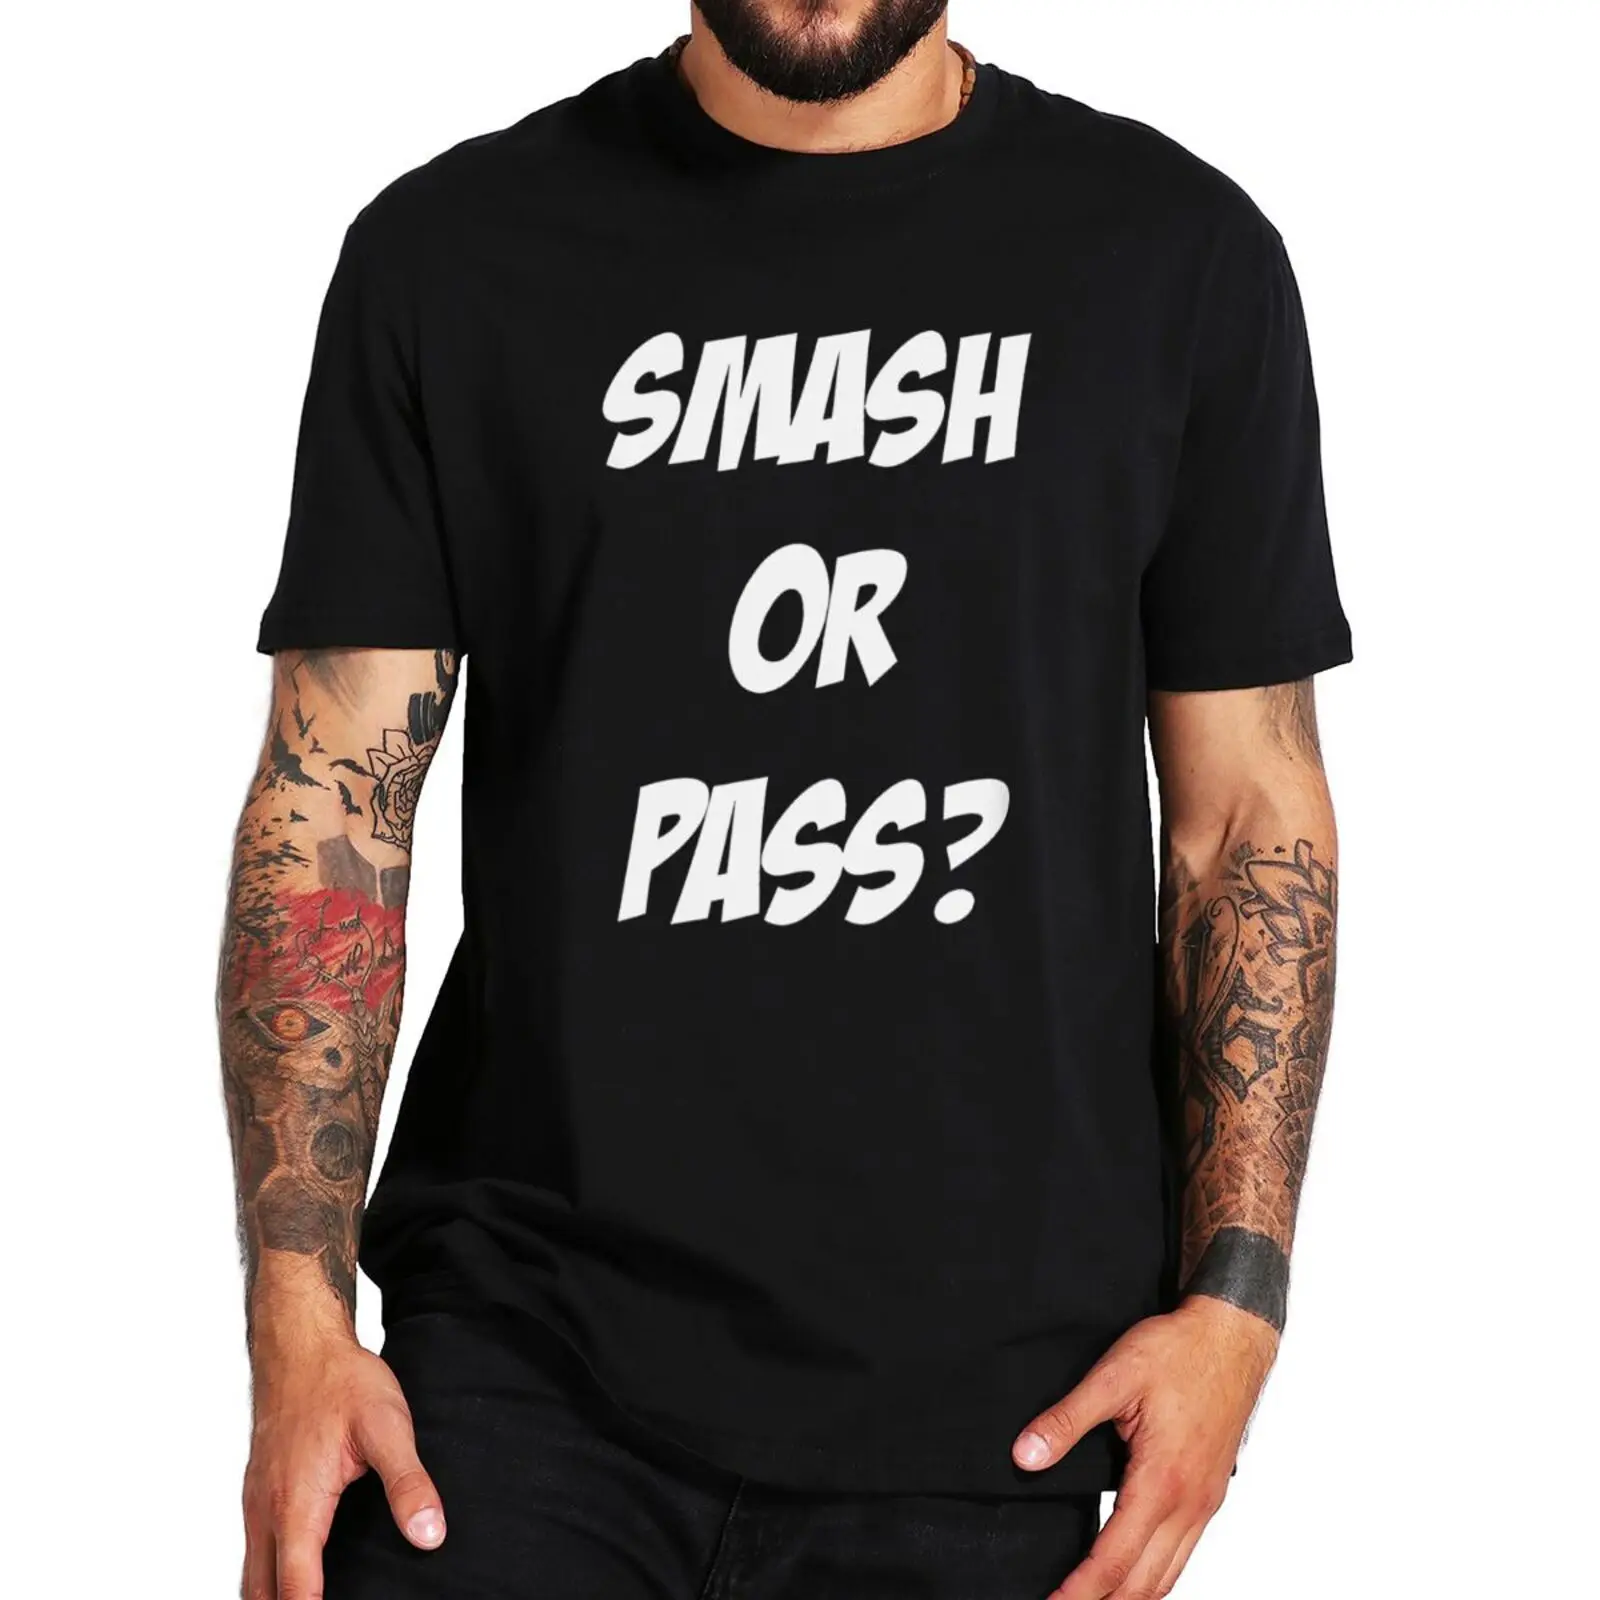 Футболка Smash Or Pass, смешная игра, сленговый юмор, мужская одежда Премиум-класса, мягкая повседневная футболка из 100% хлопка, размер ЕС